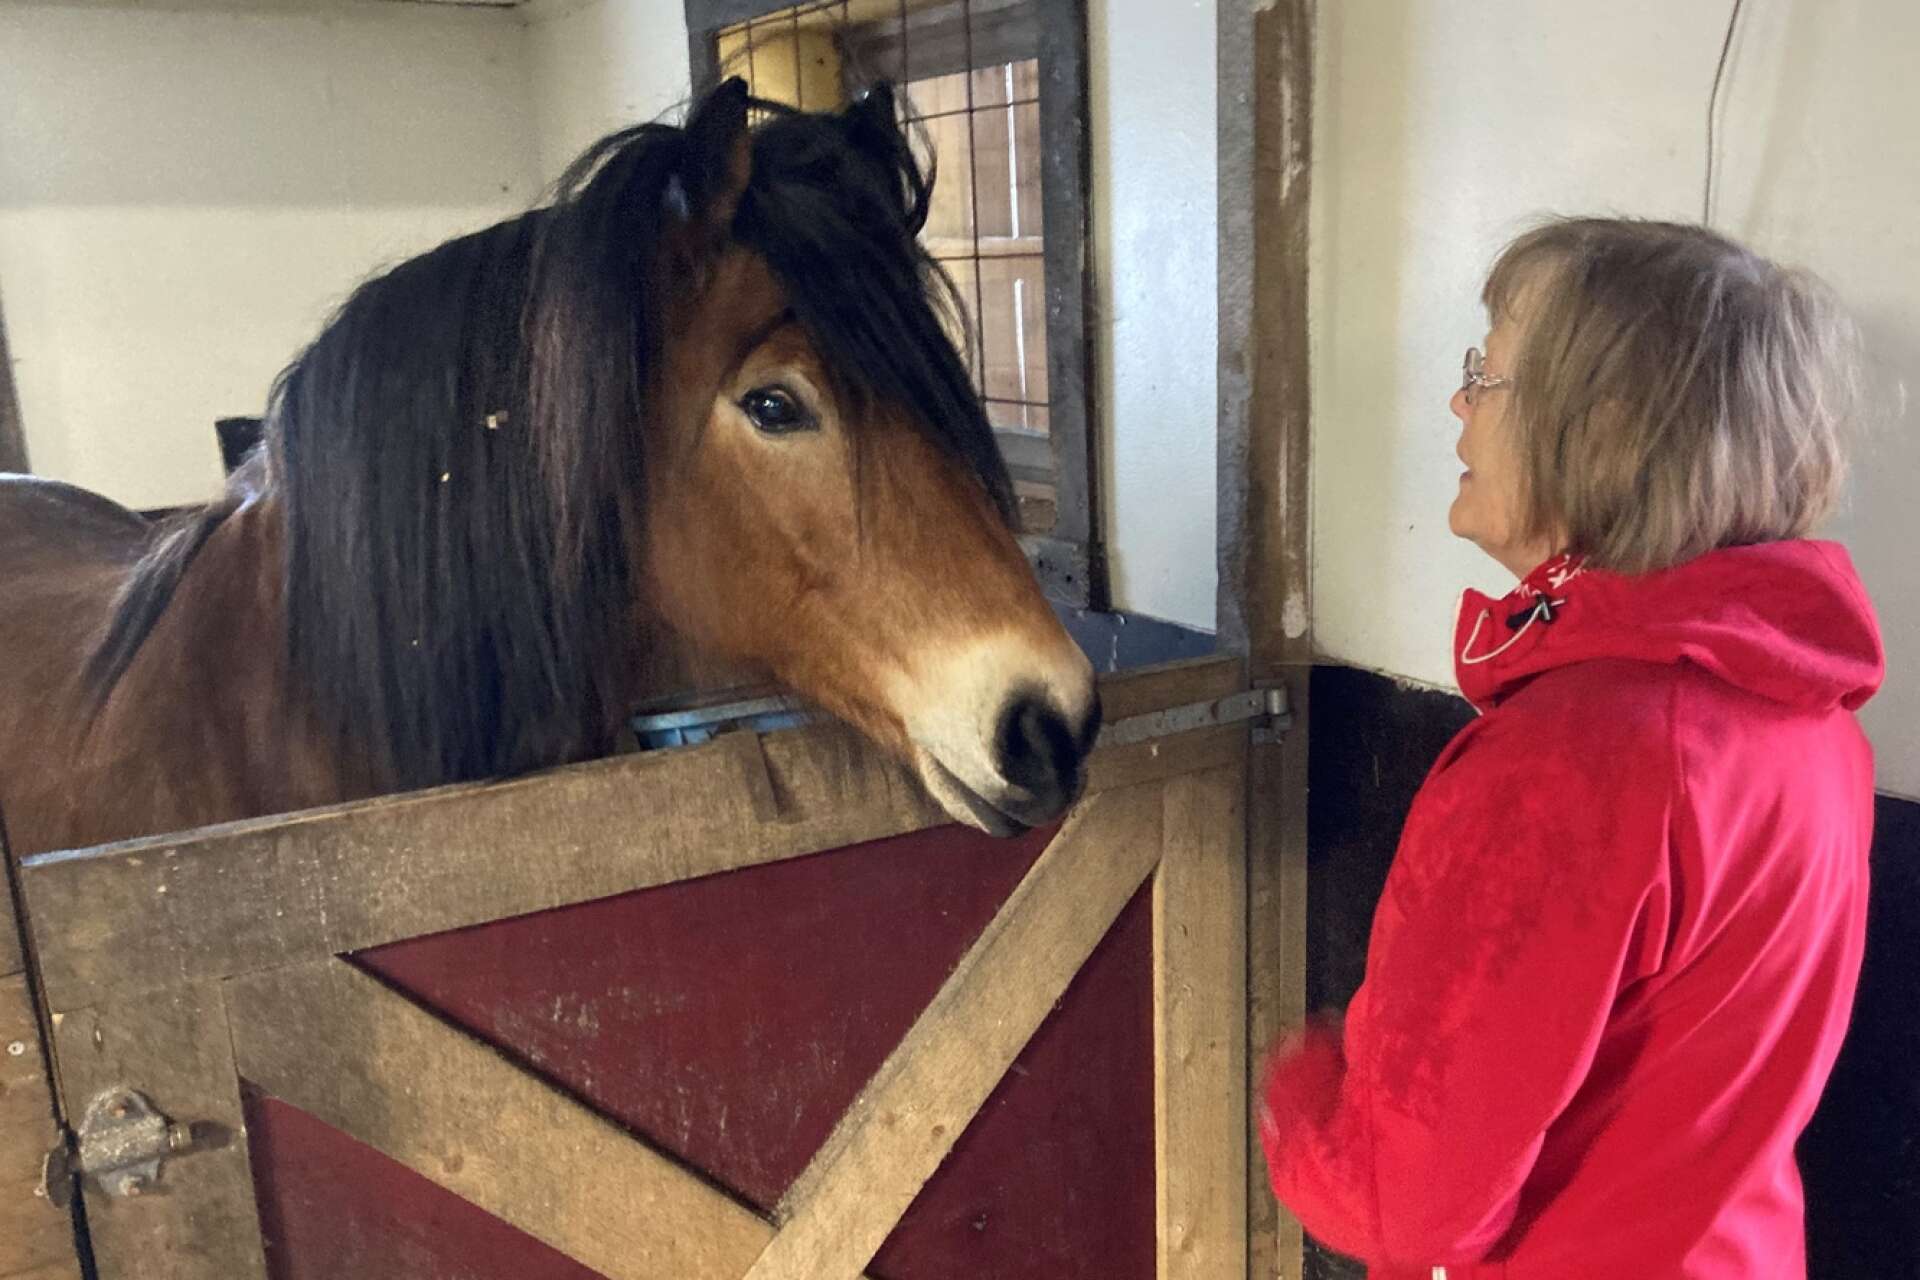  Även hästen Hector gillare att få besök.